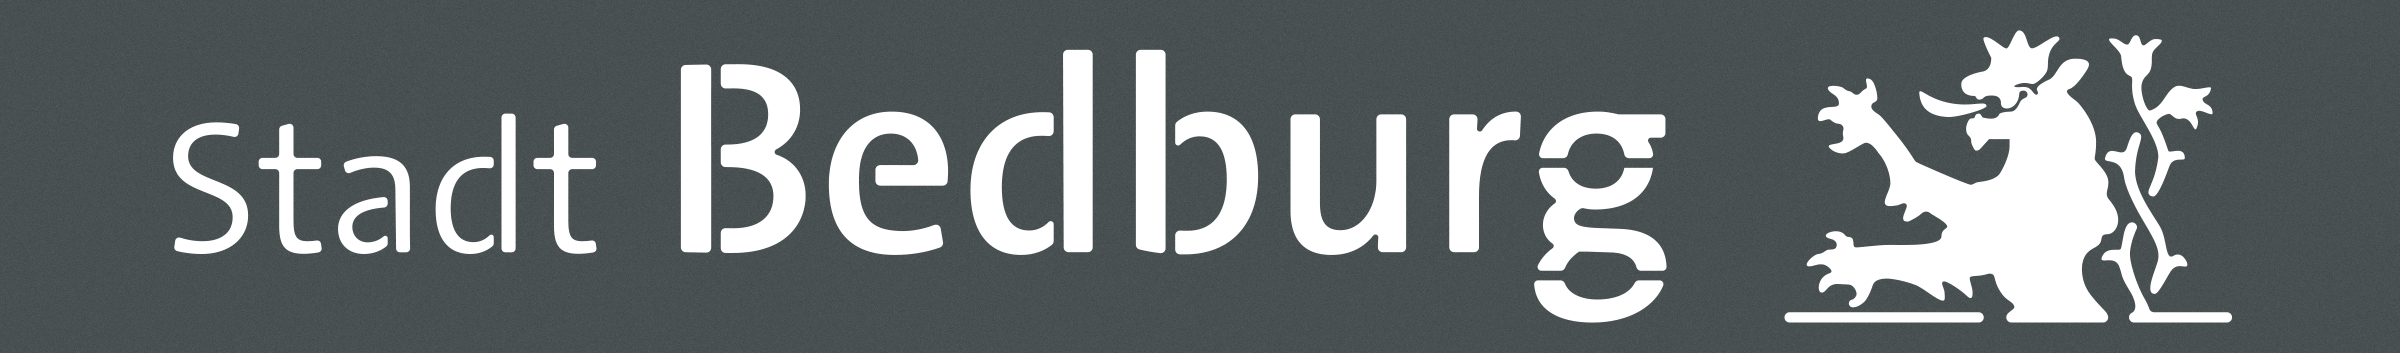 Bedburg-Logoumsetzung